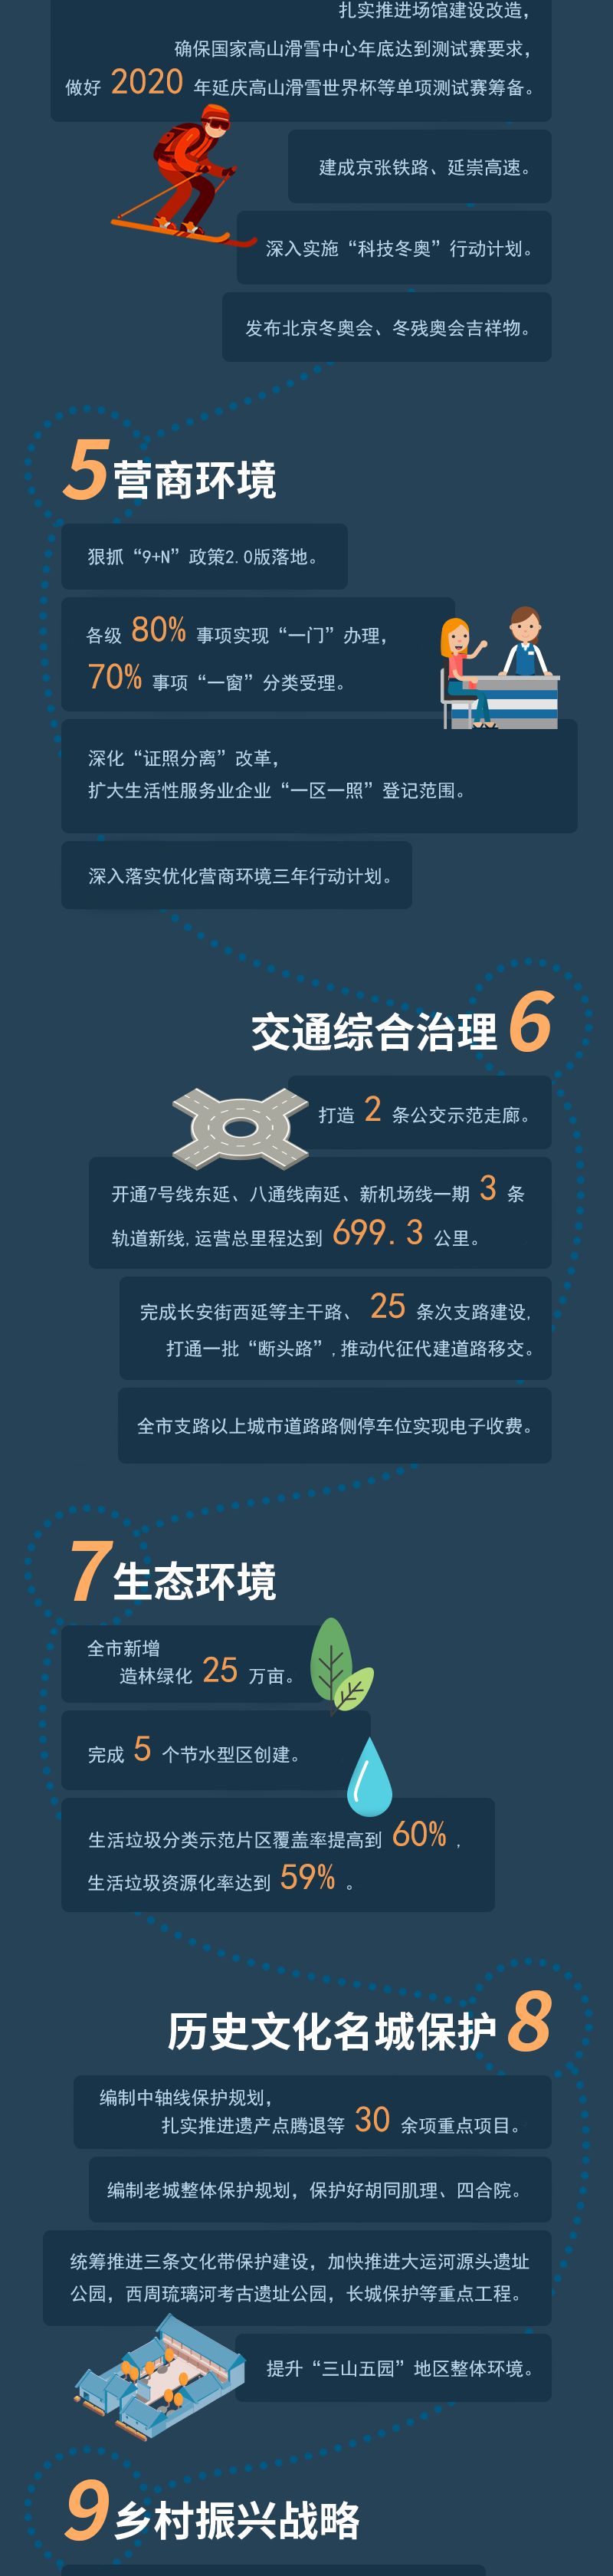 2019年北京市政府工作报告十大关键字词